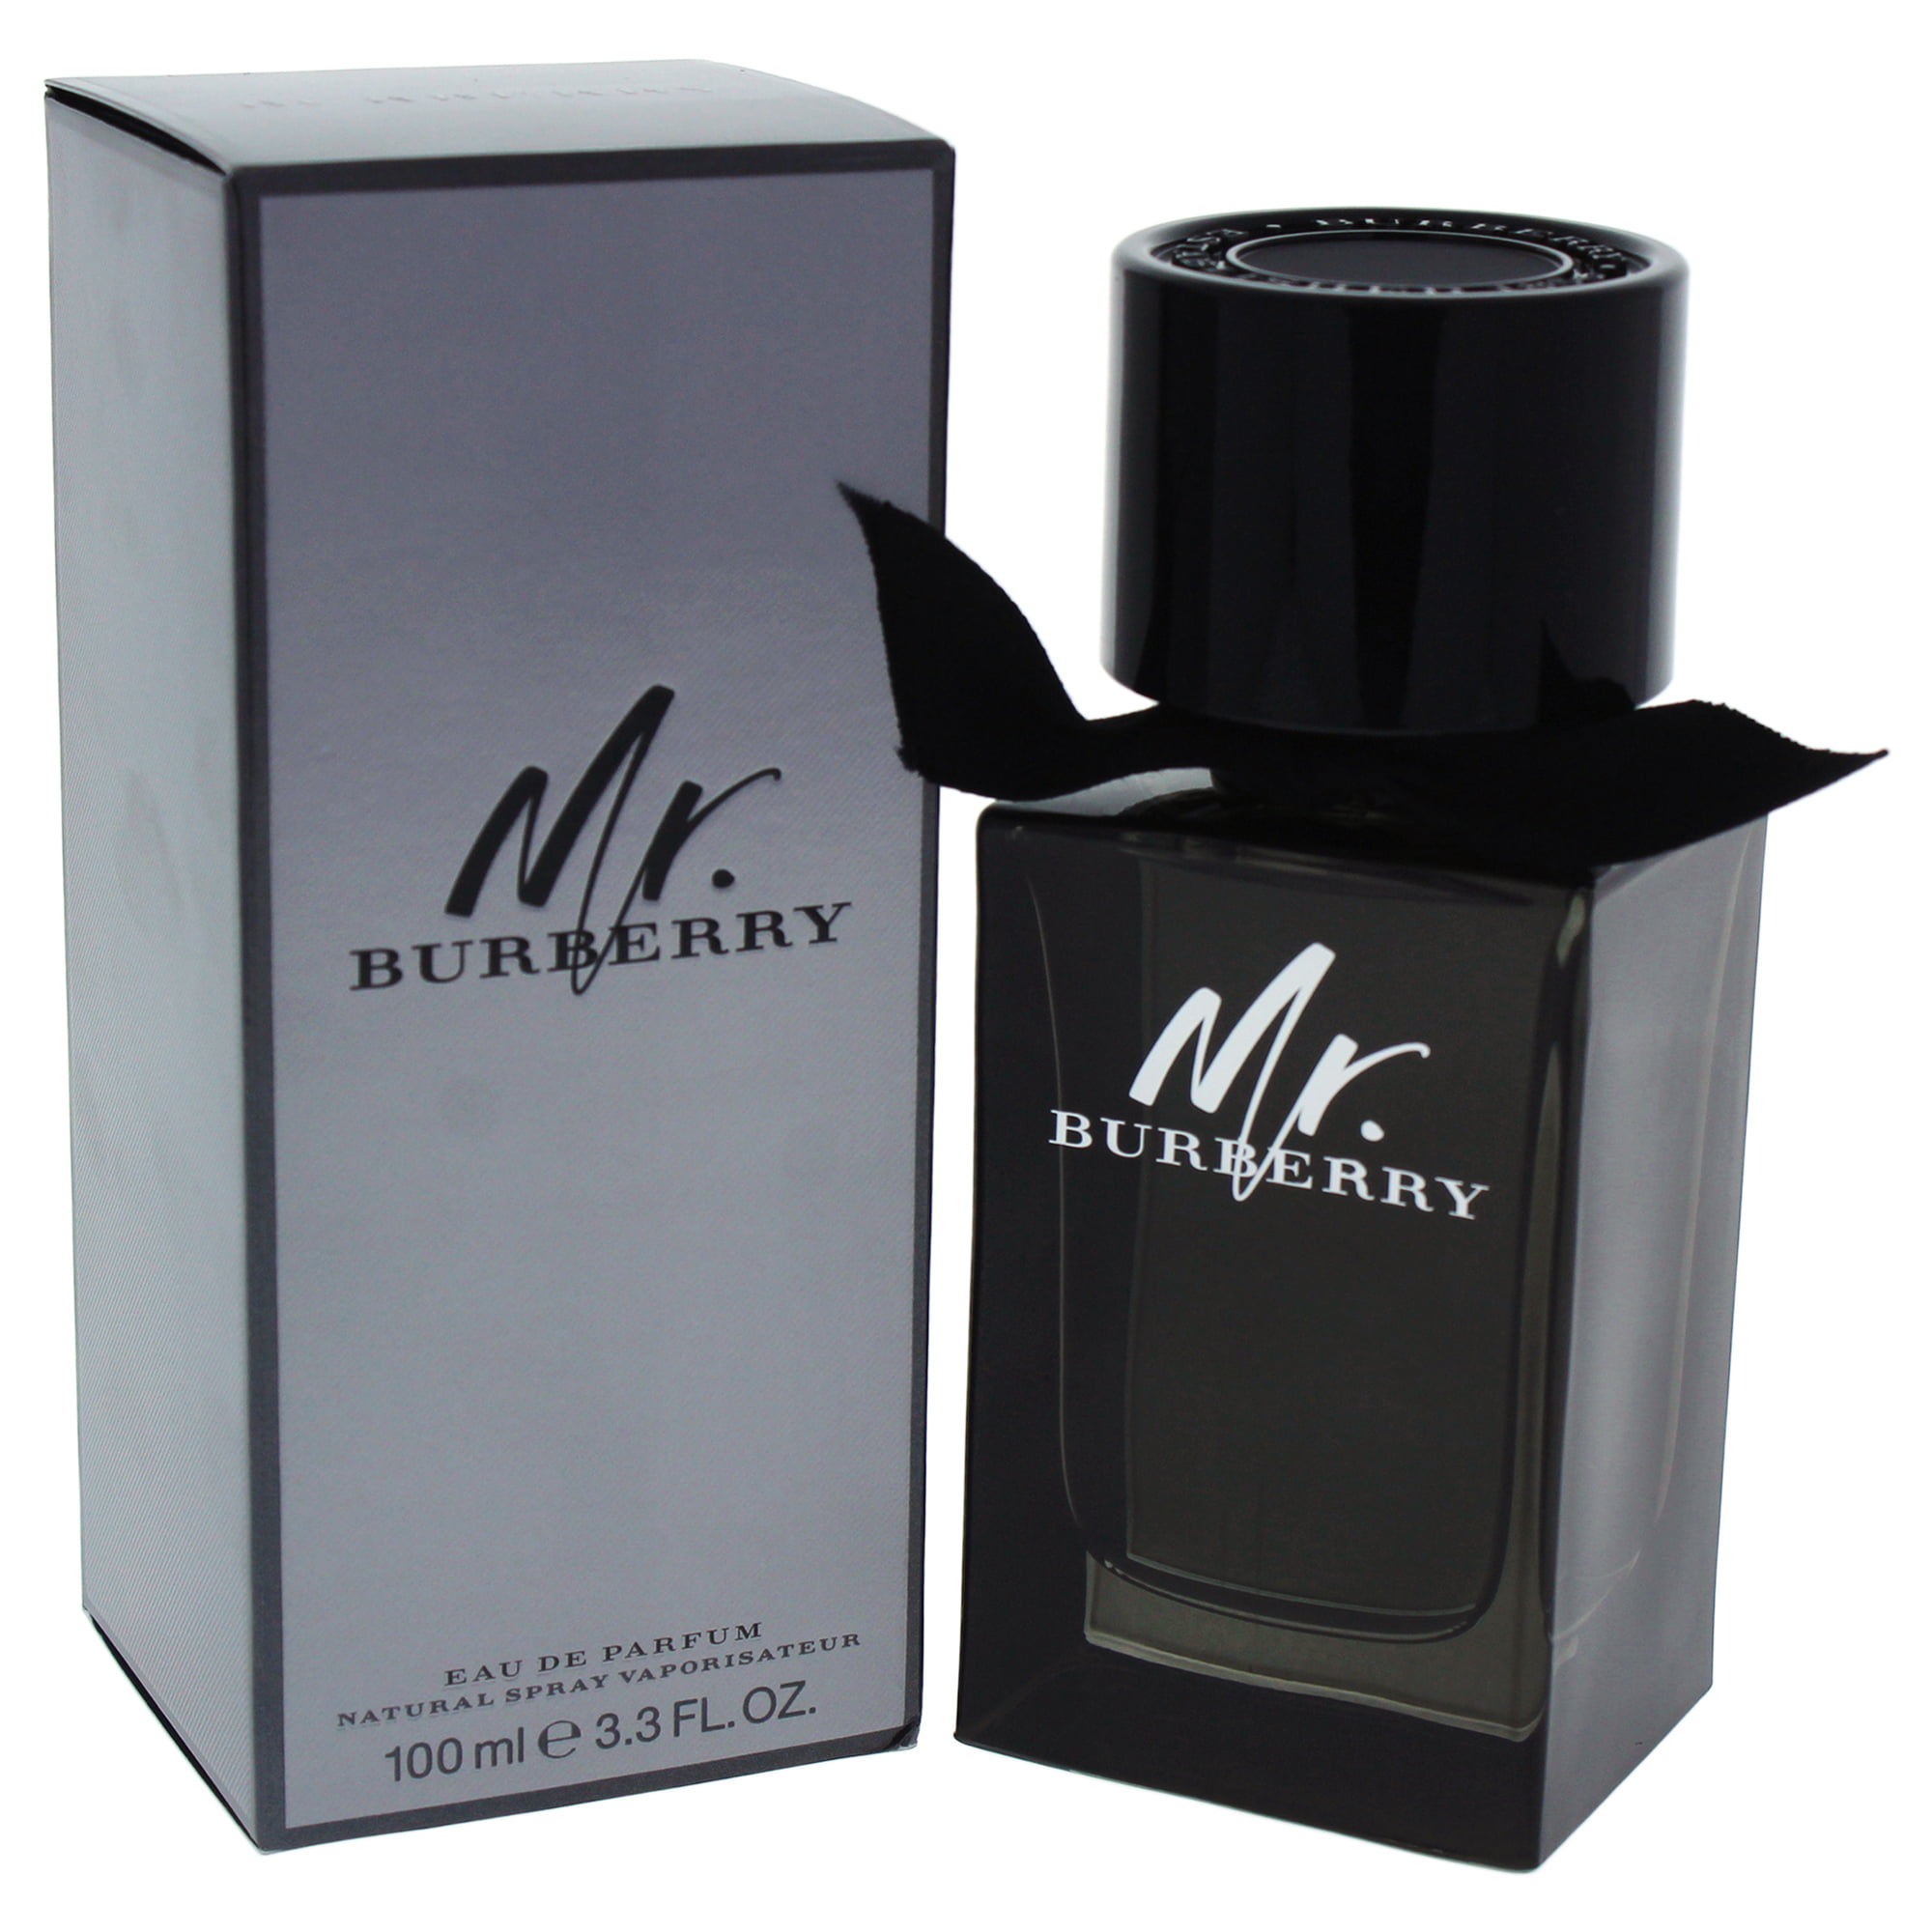 Burberry Mr. Burberry Eau de Parfum, for 3.3 Oz Walmart.com